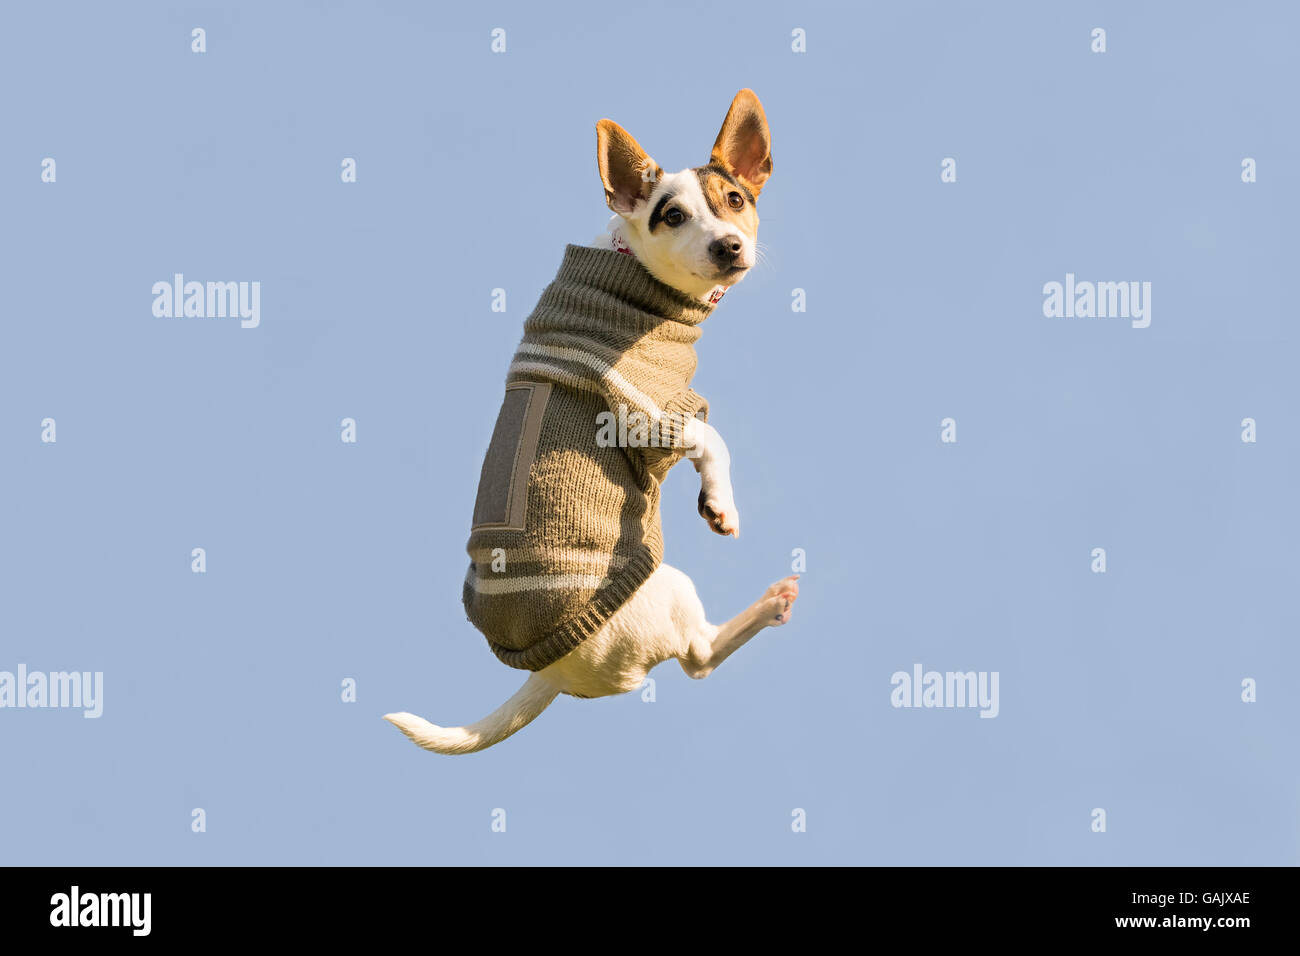 Jack Russell perro saltando alto en el aire mirando a la cámara. Un momento divertido de un perro que volaba vistiendo la ropa de invierno. Foto de stock